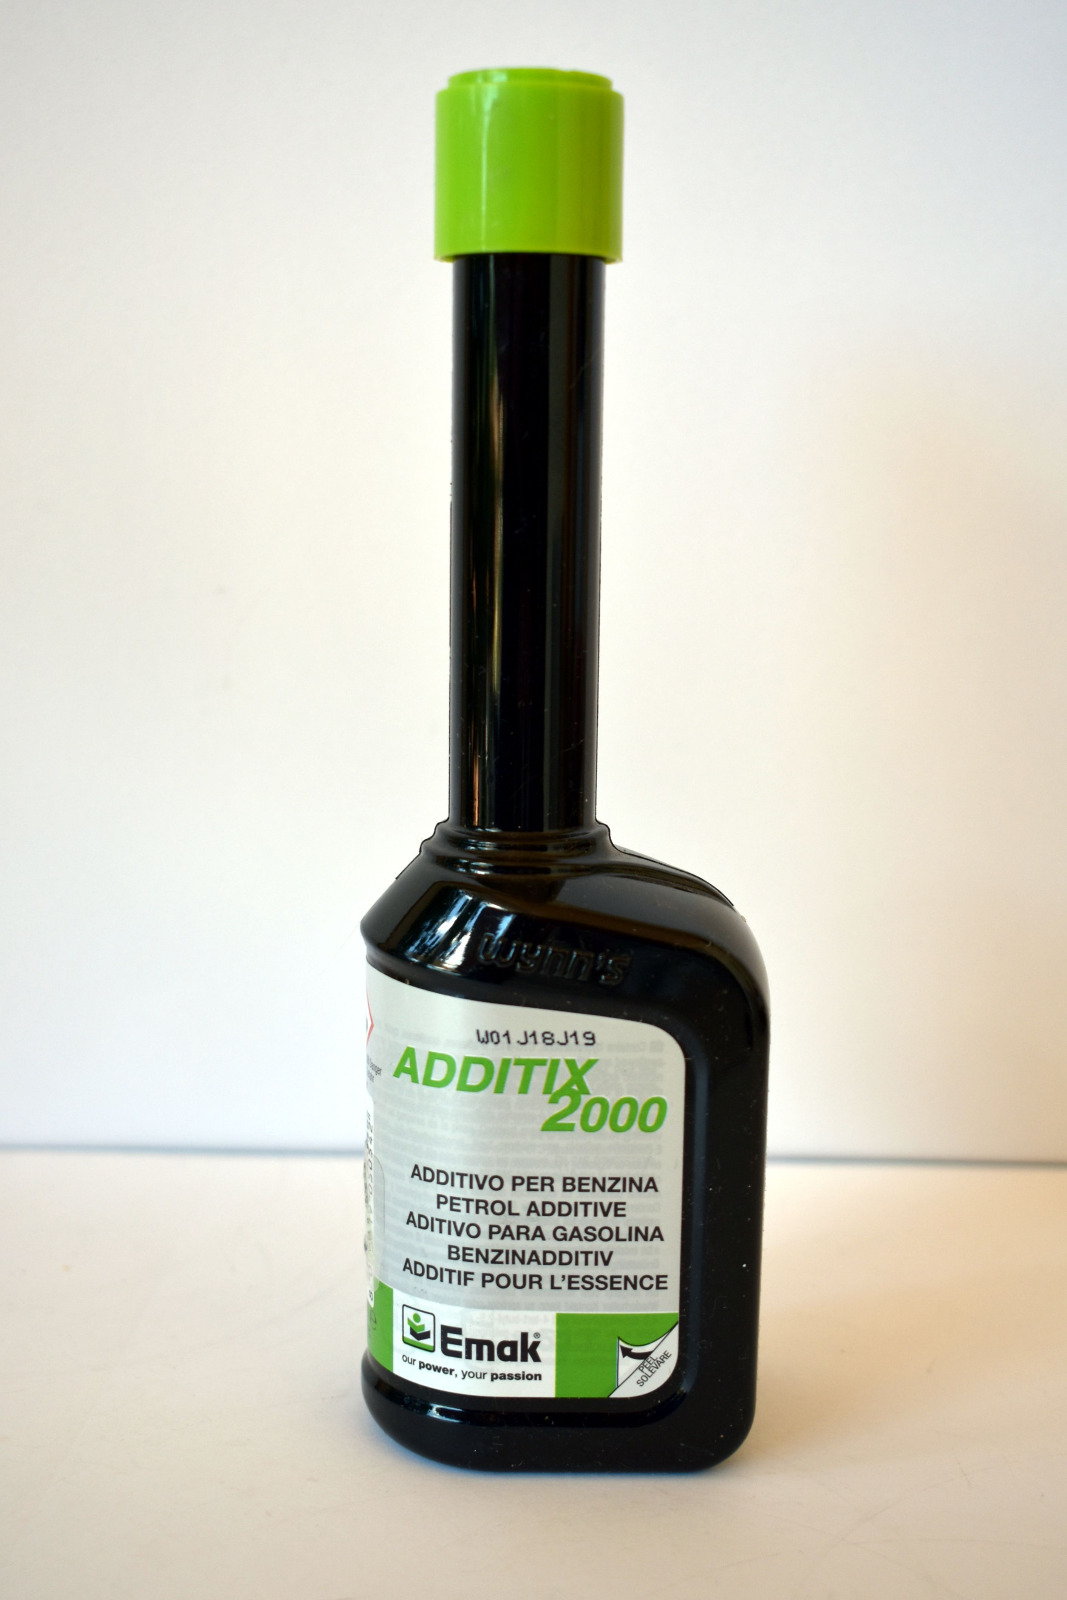 ADDITIX 2000 additivo benzina EMAK per motoseghe e decespugliatori